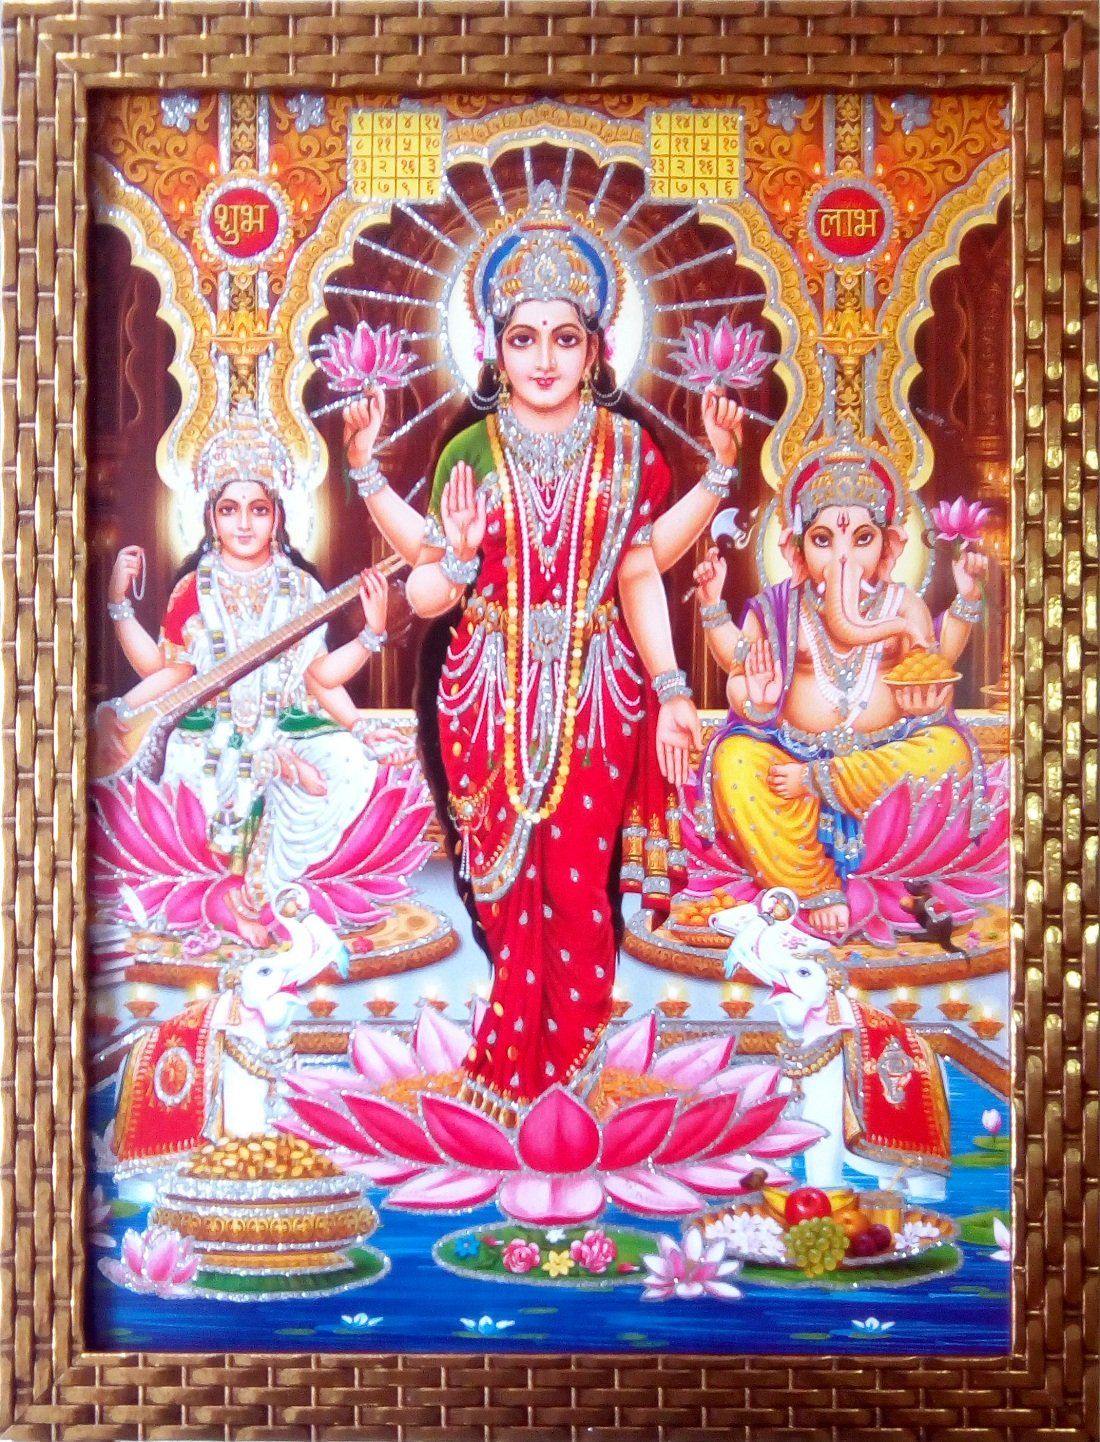 Buy Shree Handicraft Laxmi Ji Ganesh Ji Saraswati ji Photo Frame Home Décor Laxmi Ganesh Saraswati Photo Frame Goddess Lakshmi Laxmi Ji Home Décor Lakshmi Ganesha Photo Frame Diwali Gift Photo Frame